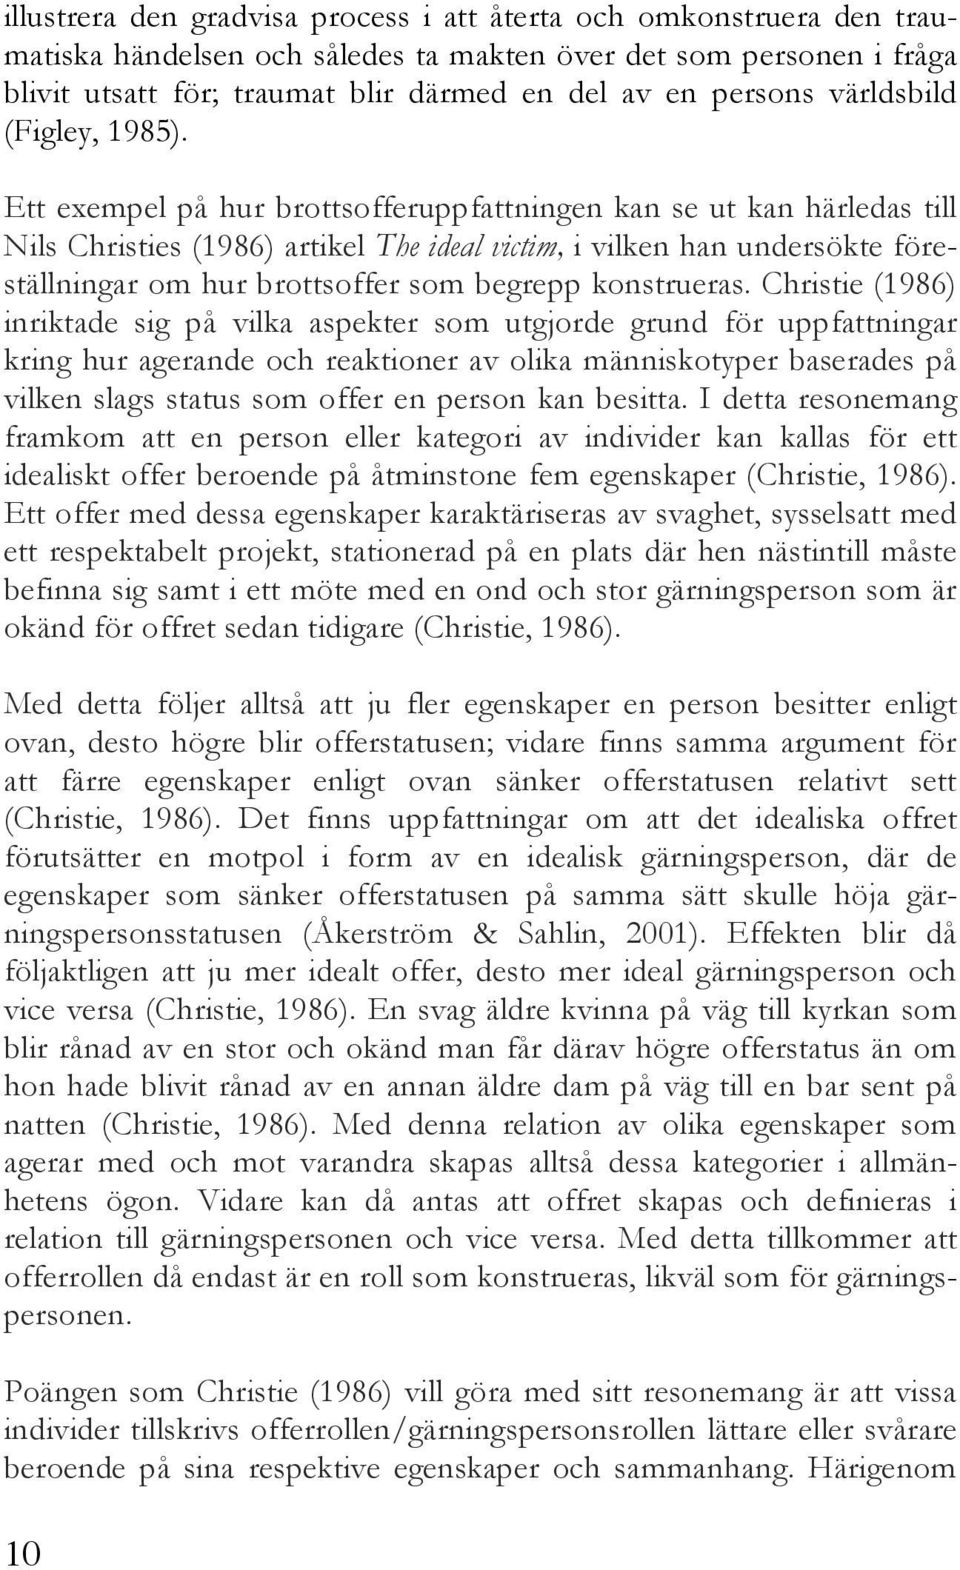 Ett exempel på hur brottsofferuppfattningen kan se ut kan härledas till Nils Christies (1986) artikel The ideal victim, i vilken han undersökte föreställningar om hur brottsoffer som begrepp